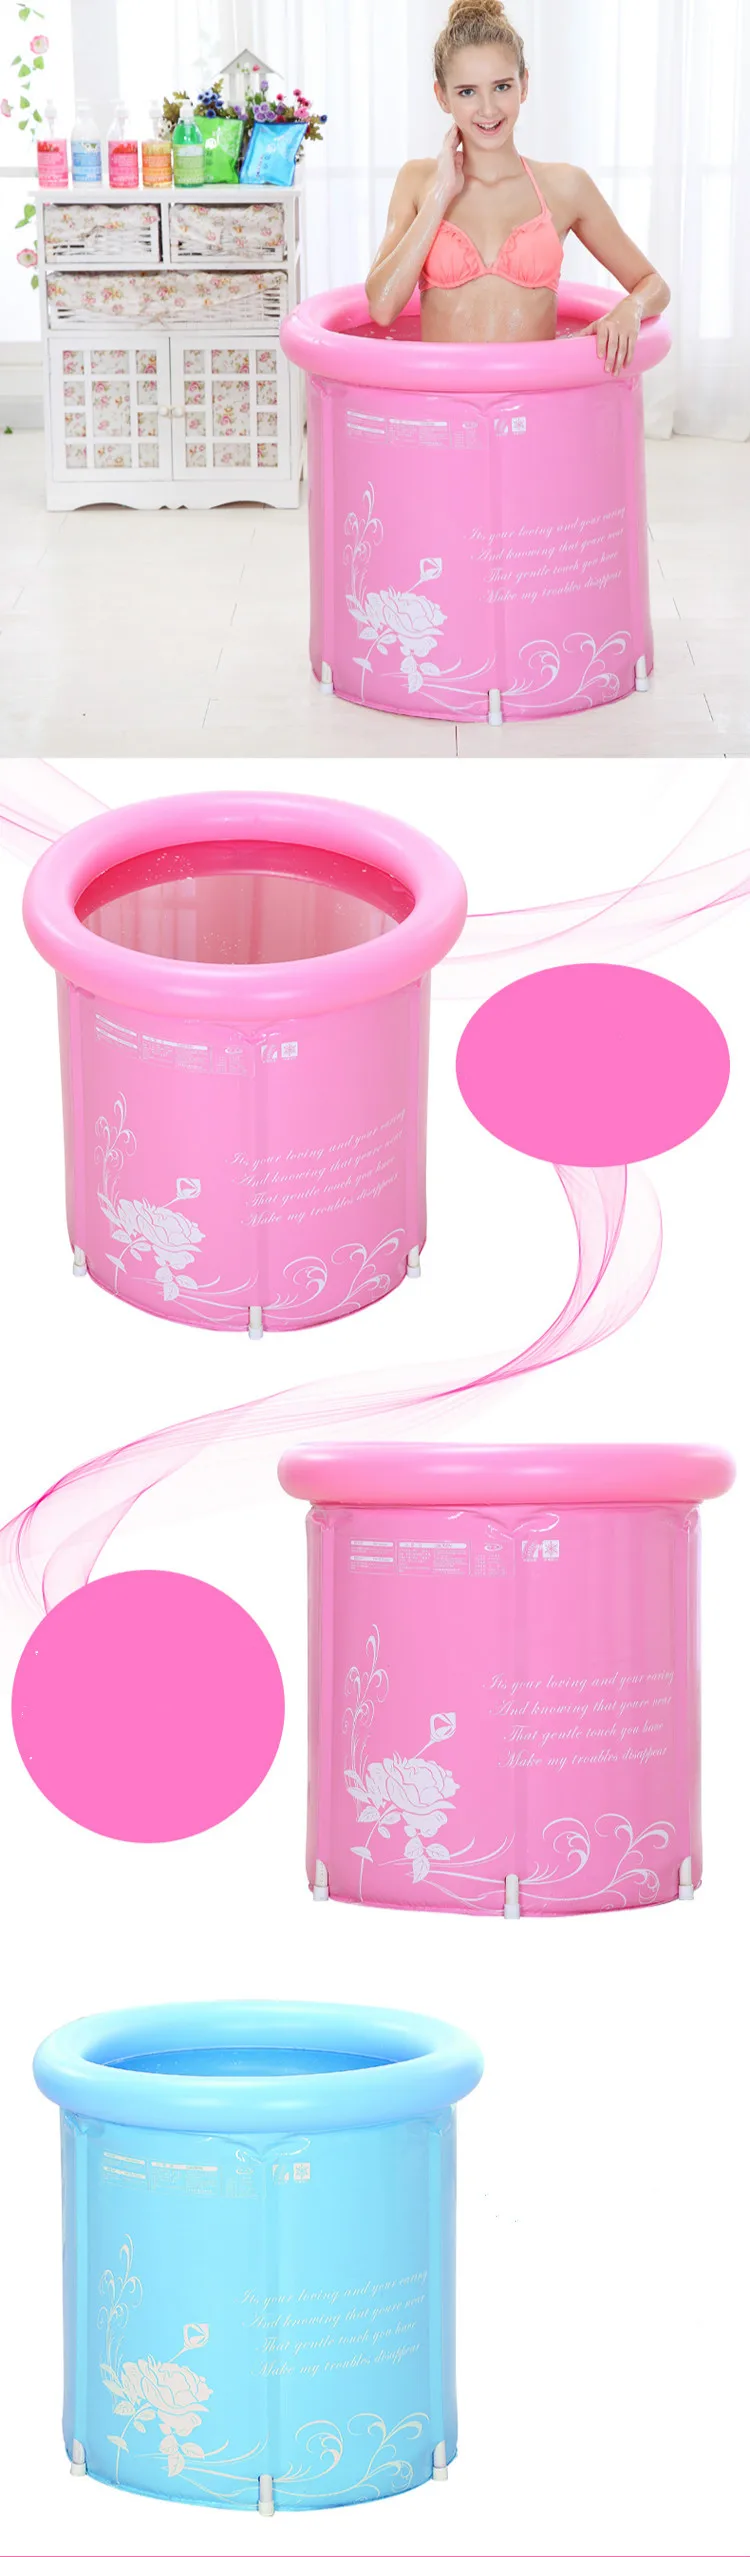 Толстый Складной ПВХ надувная ванна для плавания для детей и взрослых с крышкой розовый/синий Экологически чистая Ванна